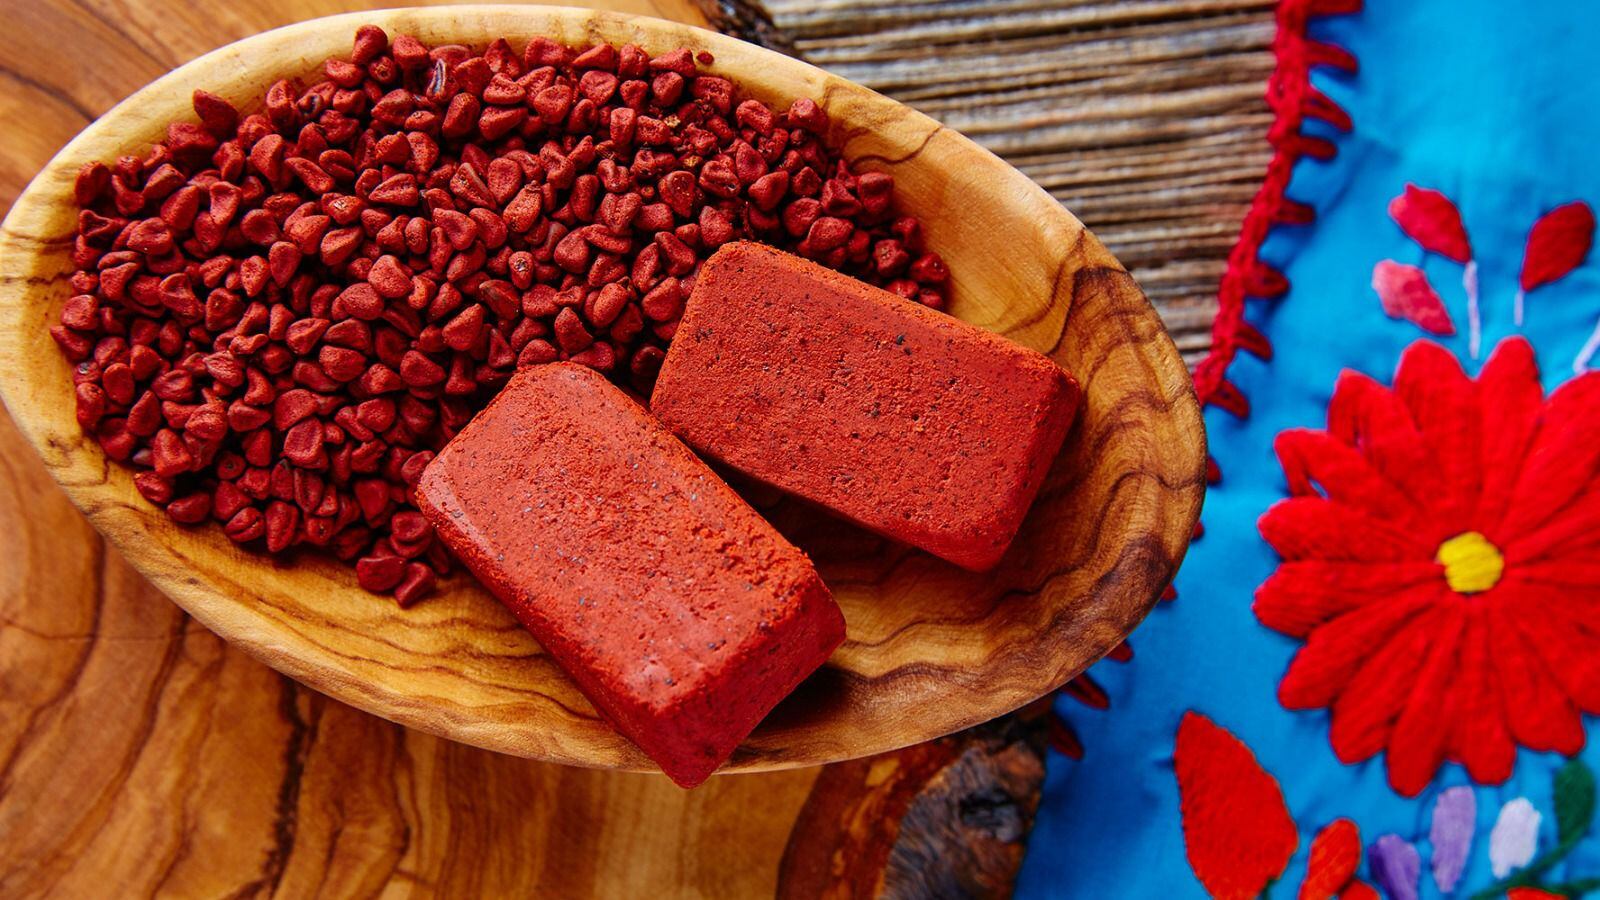 El achiote es una planta que le da el color rojo a la cochinita pibil. (Foto: Shutterstock)